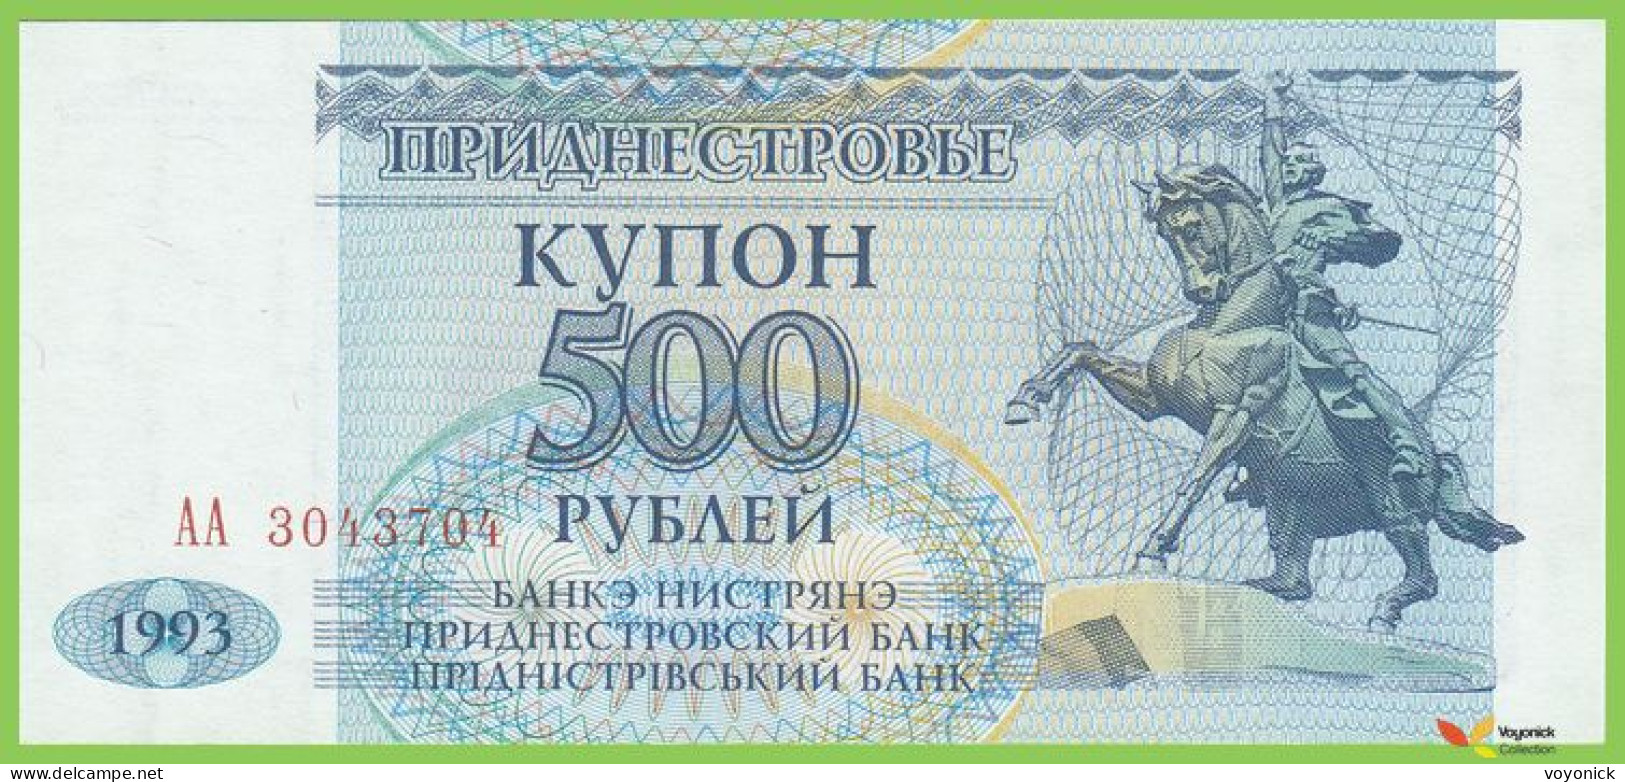 Voyo MOLDOVA (Transdniester) 500 Rubley 1993(1994) P22 B124a АA UNC - Moldawien (Moldau)